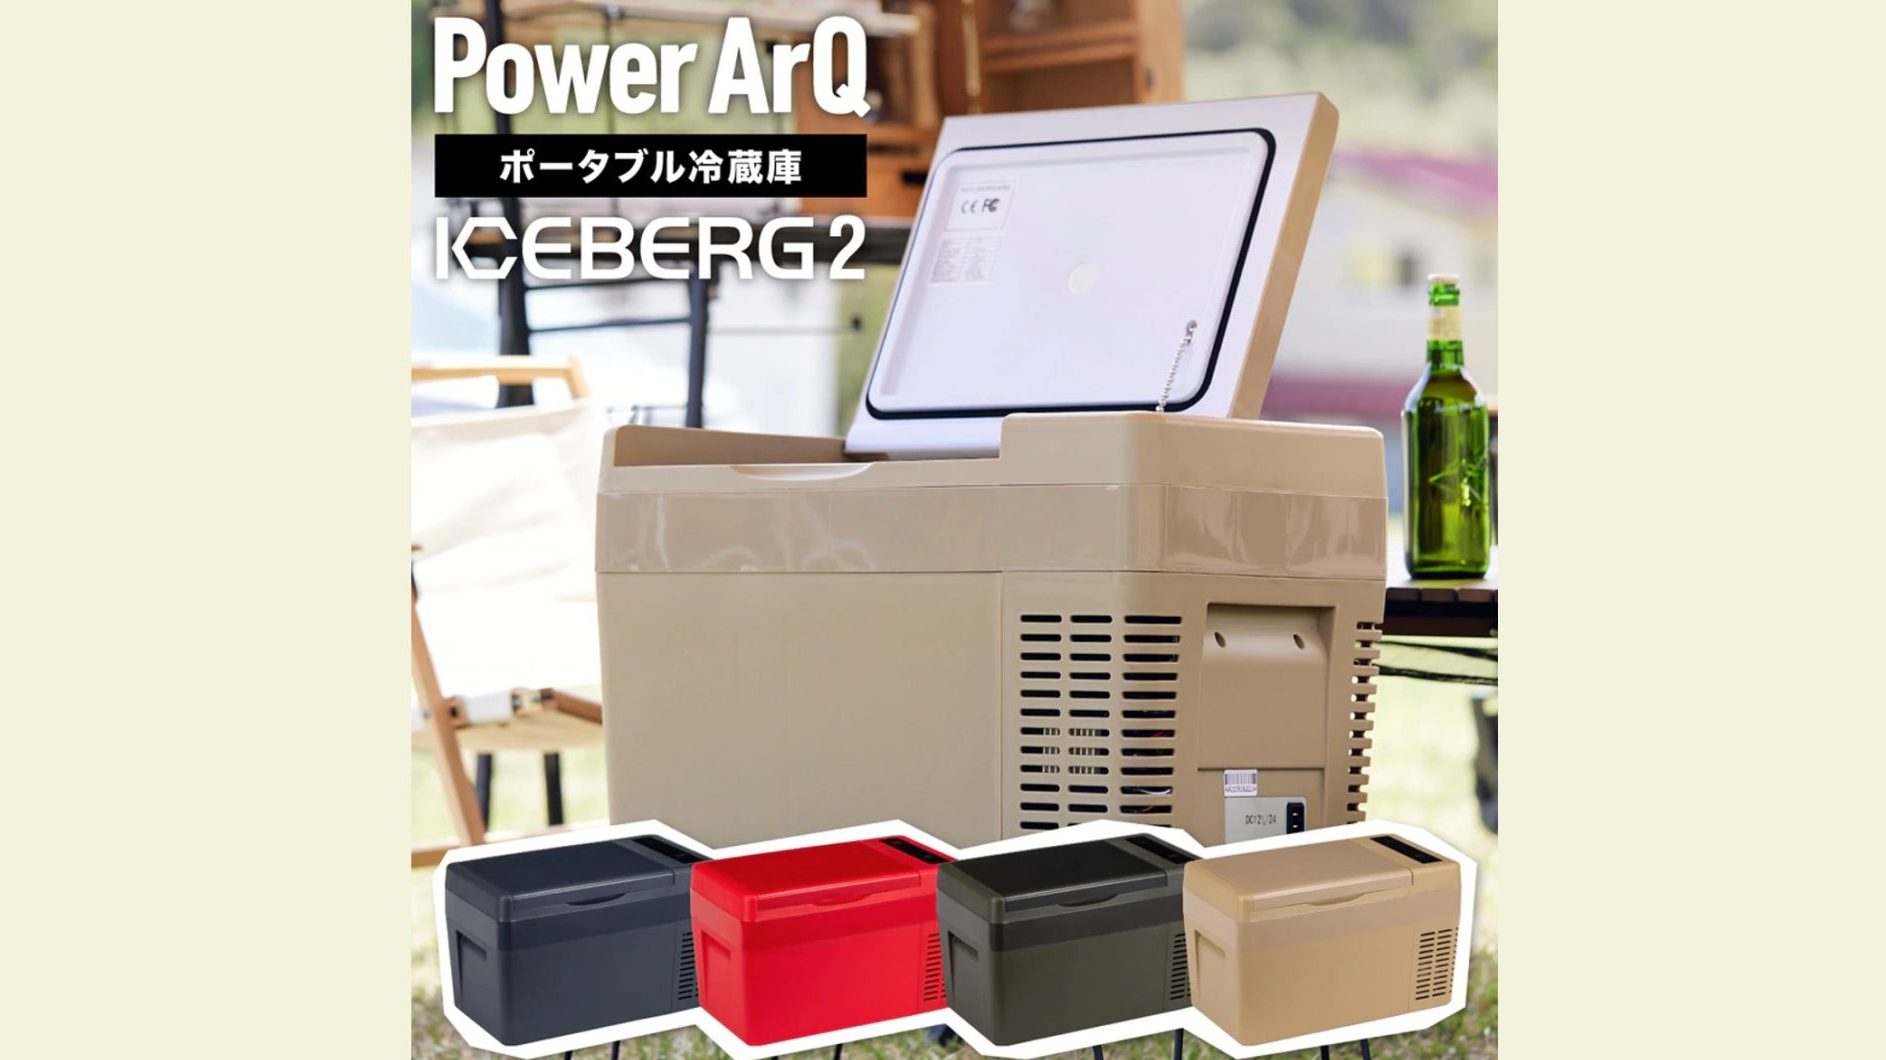 PowerArQから容量25Lのポータブル冷蔵庫「アイスバーグ2」登場